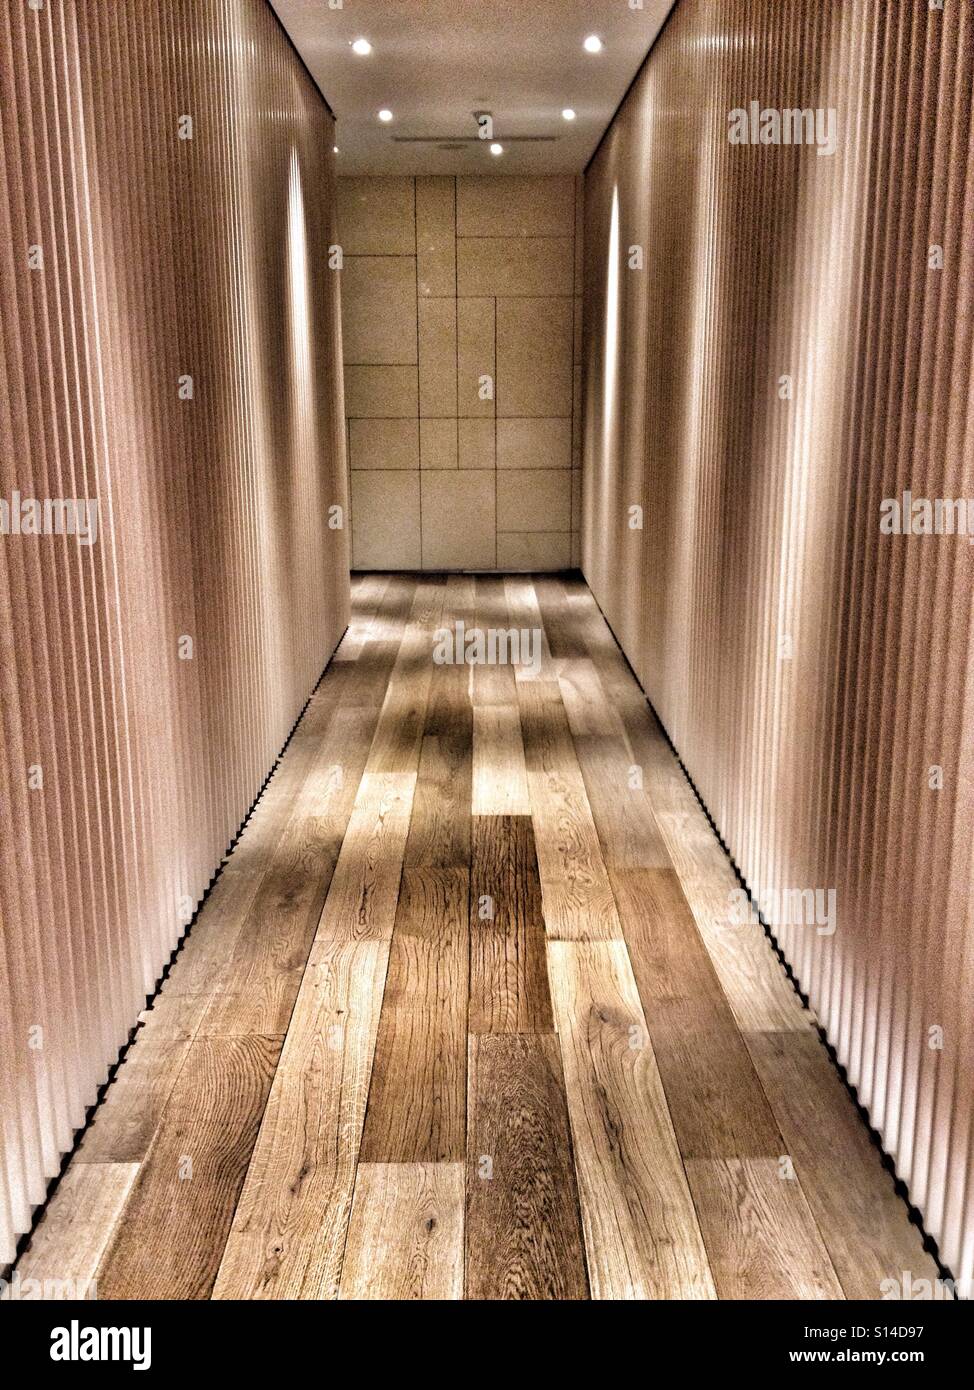 Tavola in legno e muri solidi pavimenti in legno, il passaggio in legno con illuminazione Foto Stock